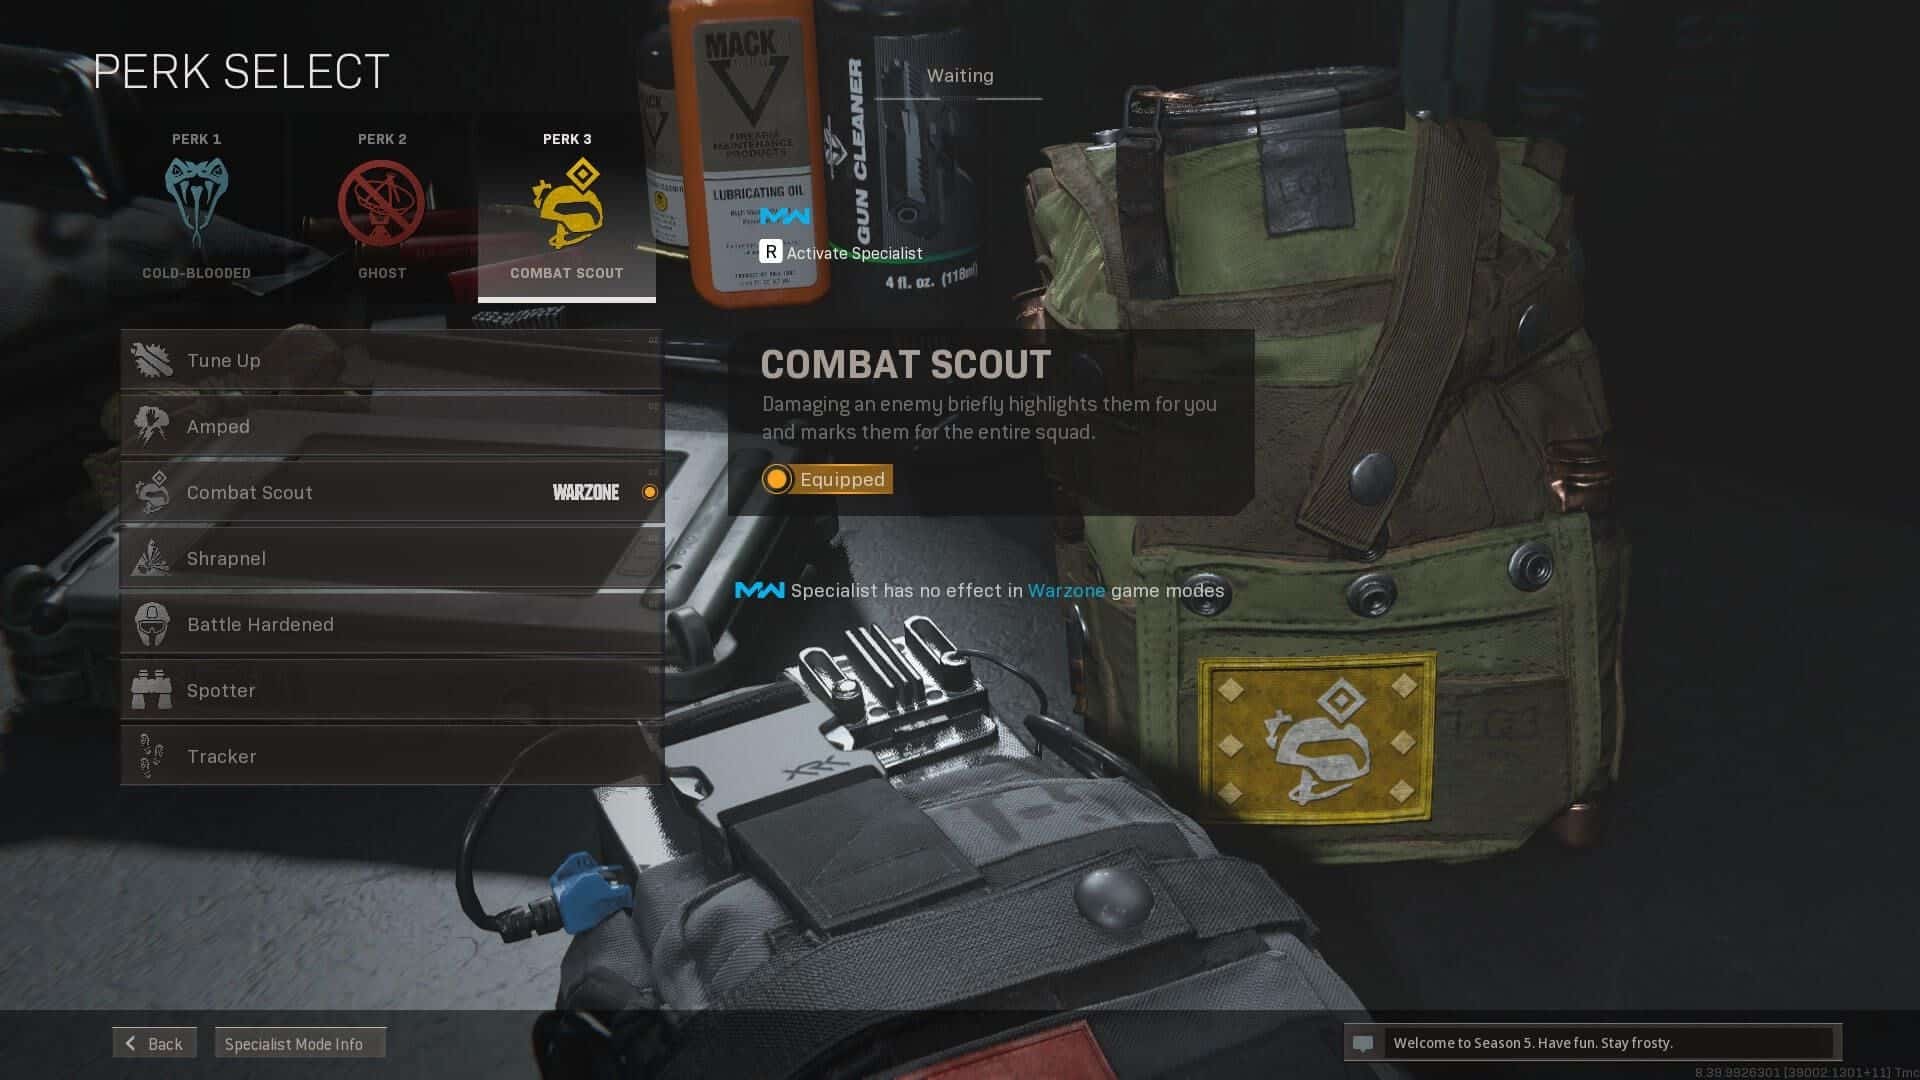 combat scout menu and description